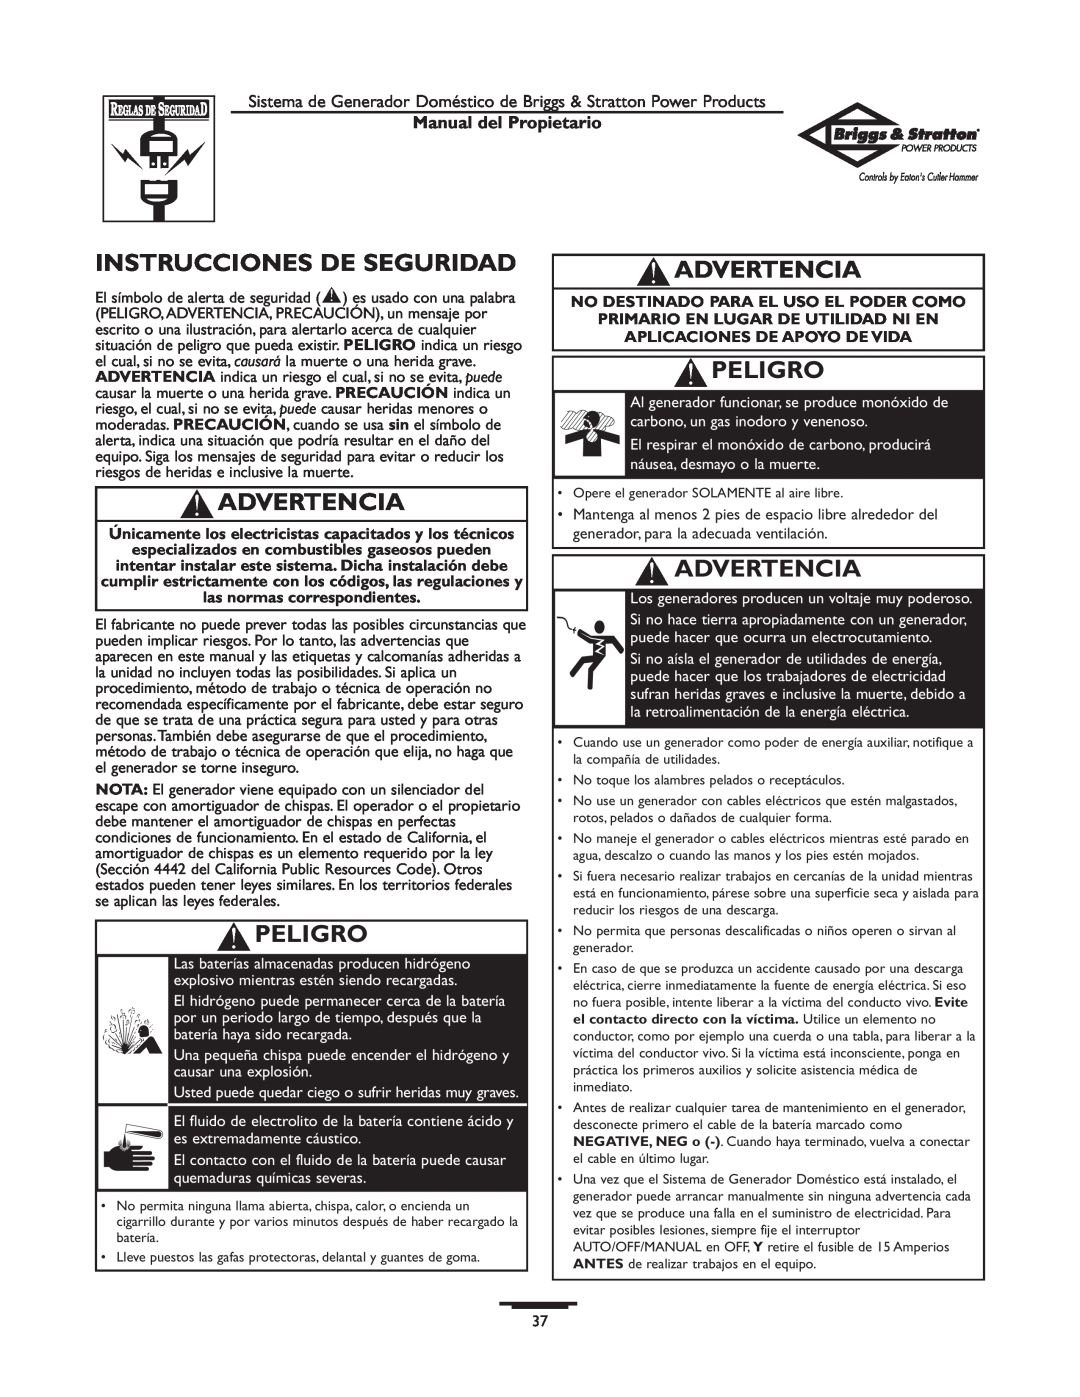 Briggs & Stratton 1679-0 owner manual Instrucciones De Seguridad, Advertencia, Peligro, Manual del Propietario 